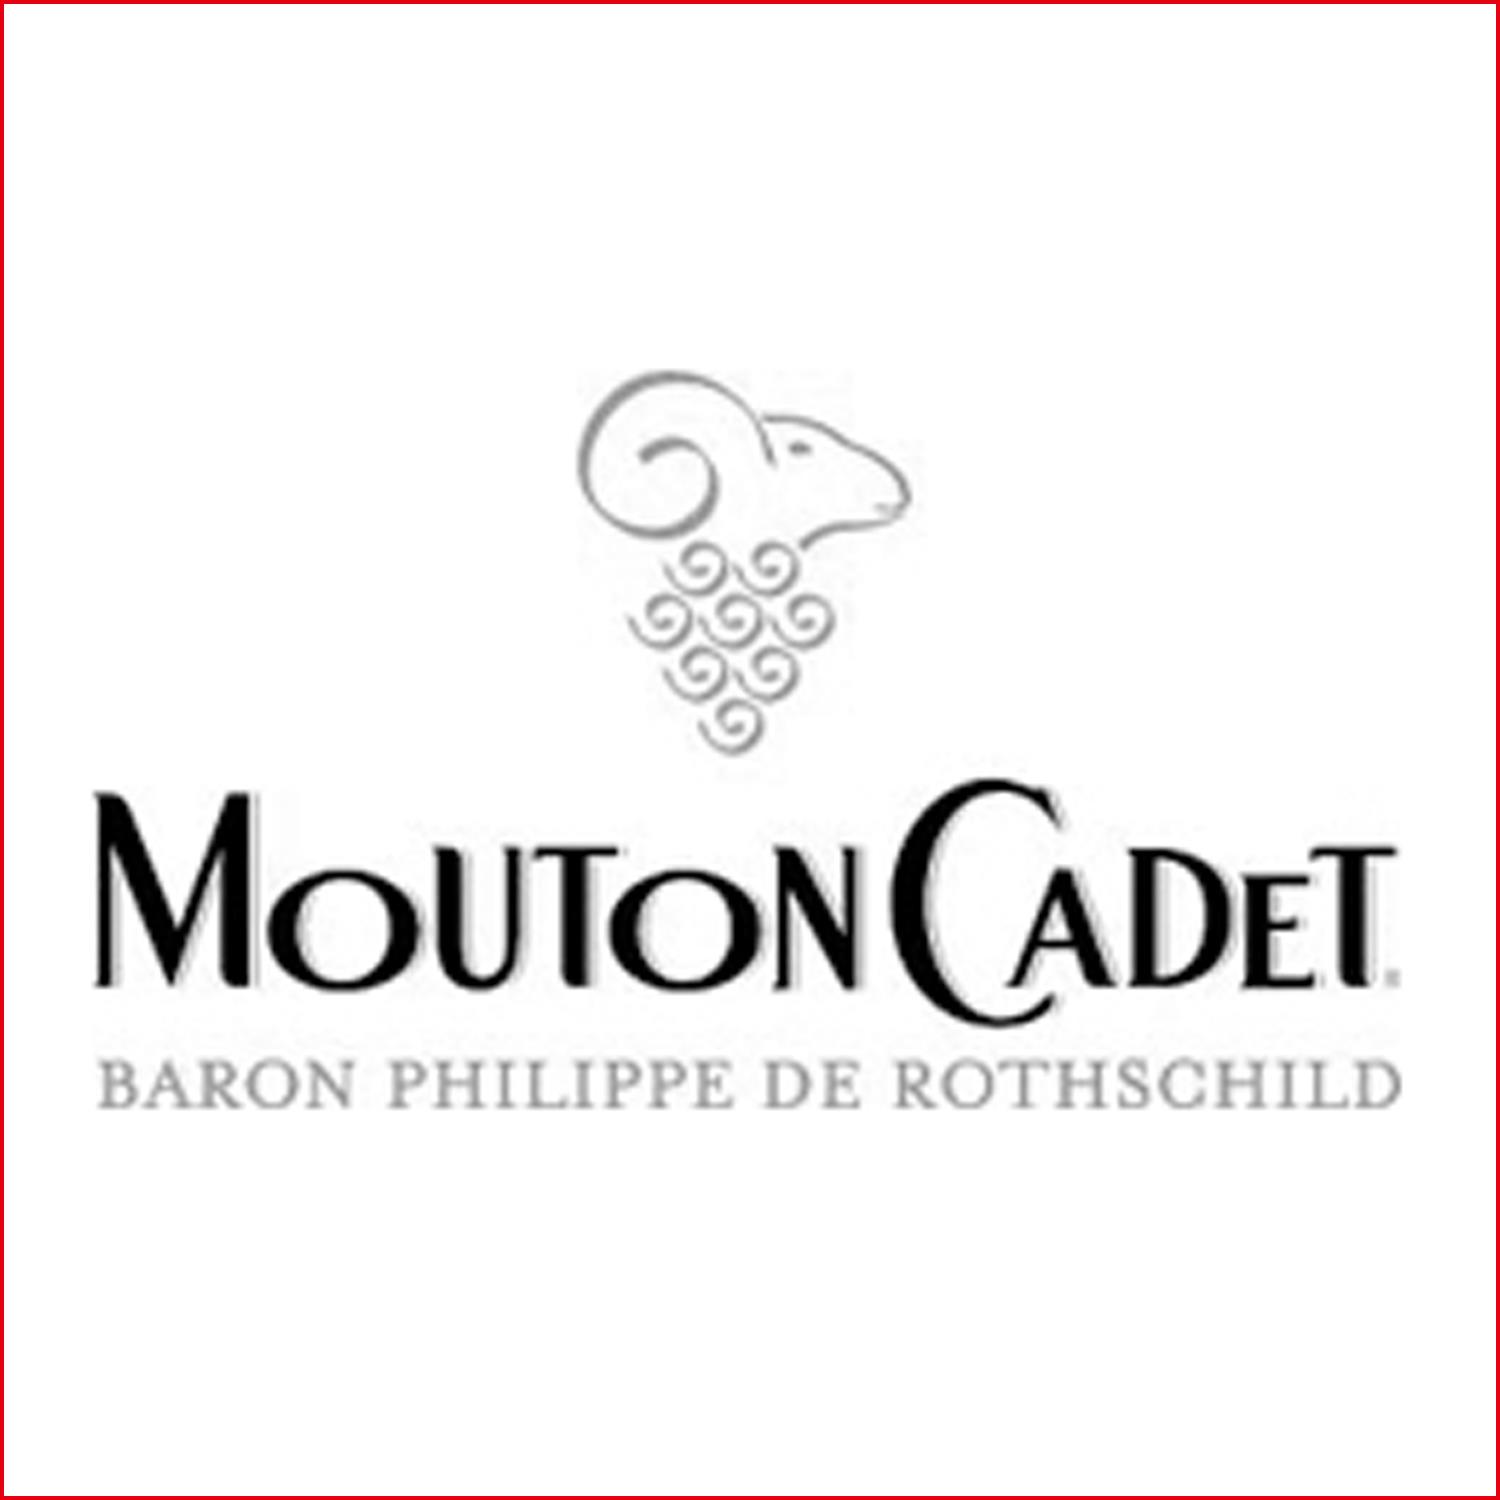 摩當卡地 Mouton Cadet